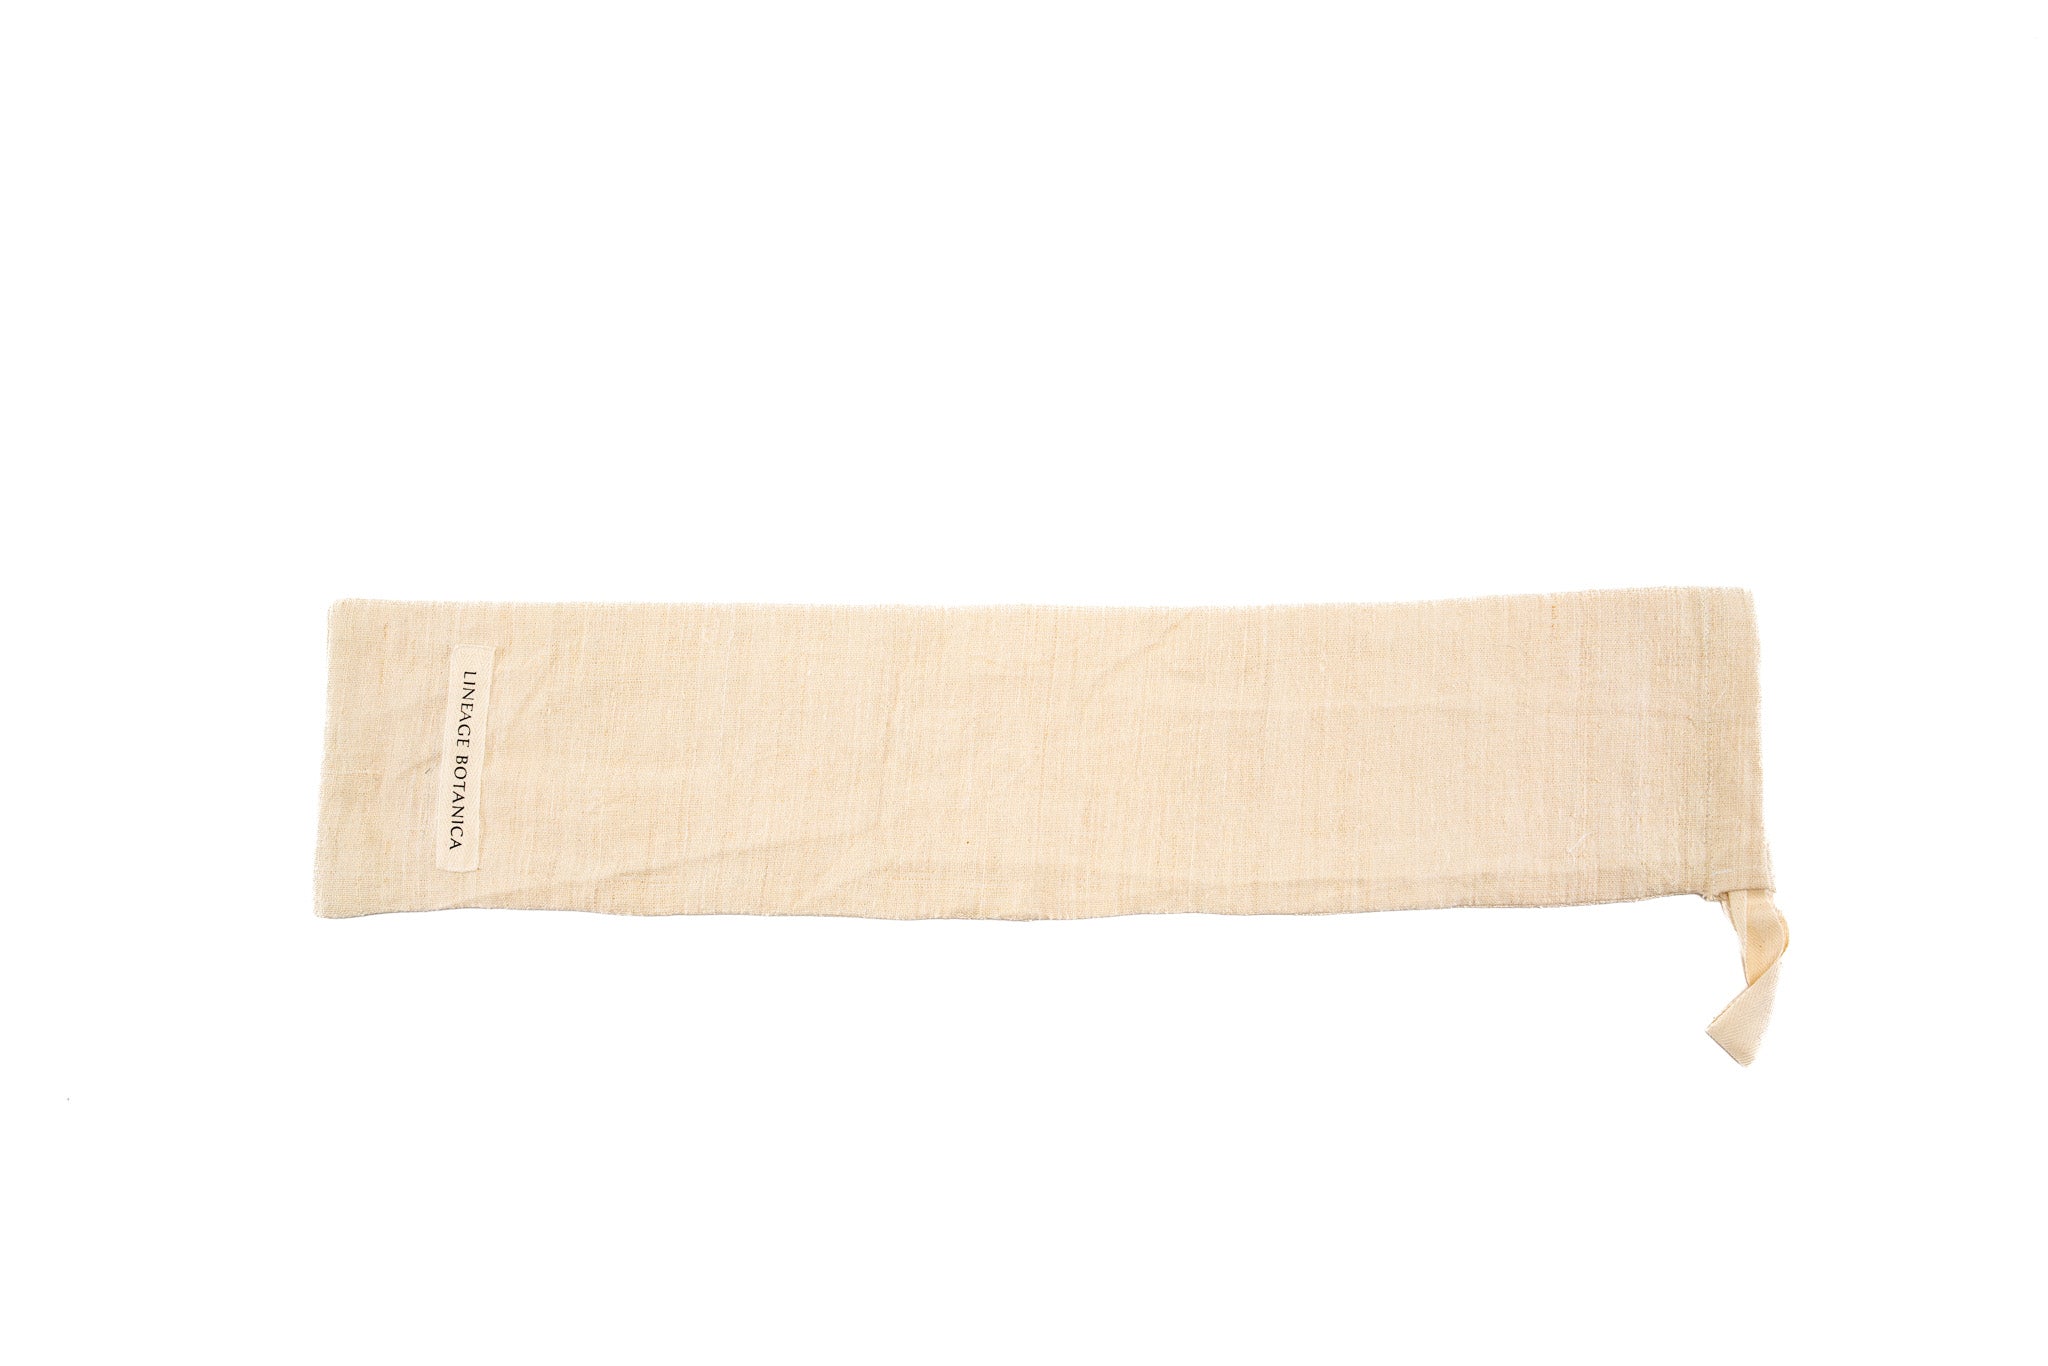 Bag: Handwoven antique and vintage hemp baguette bags- BG208